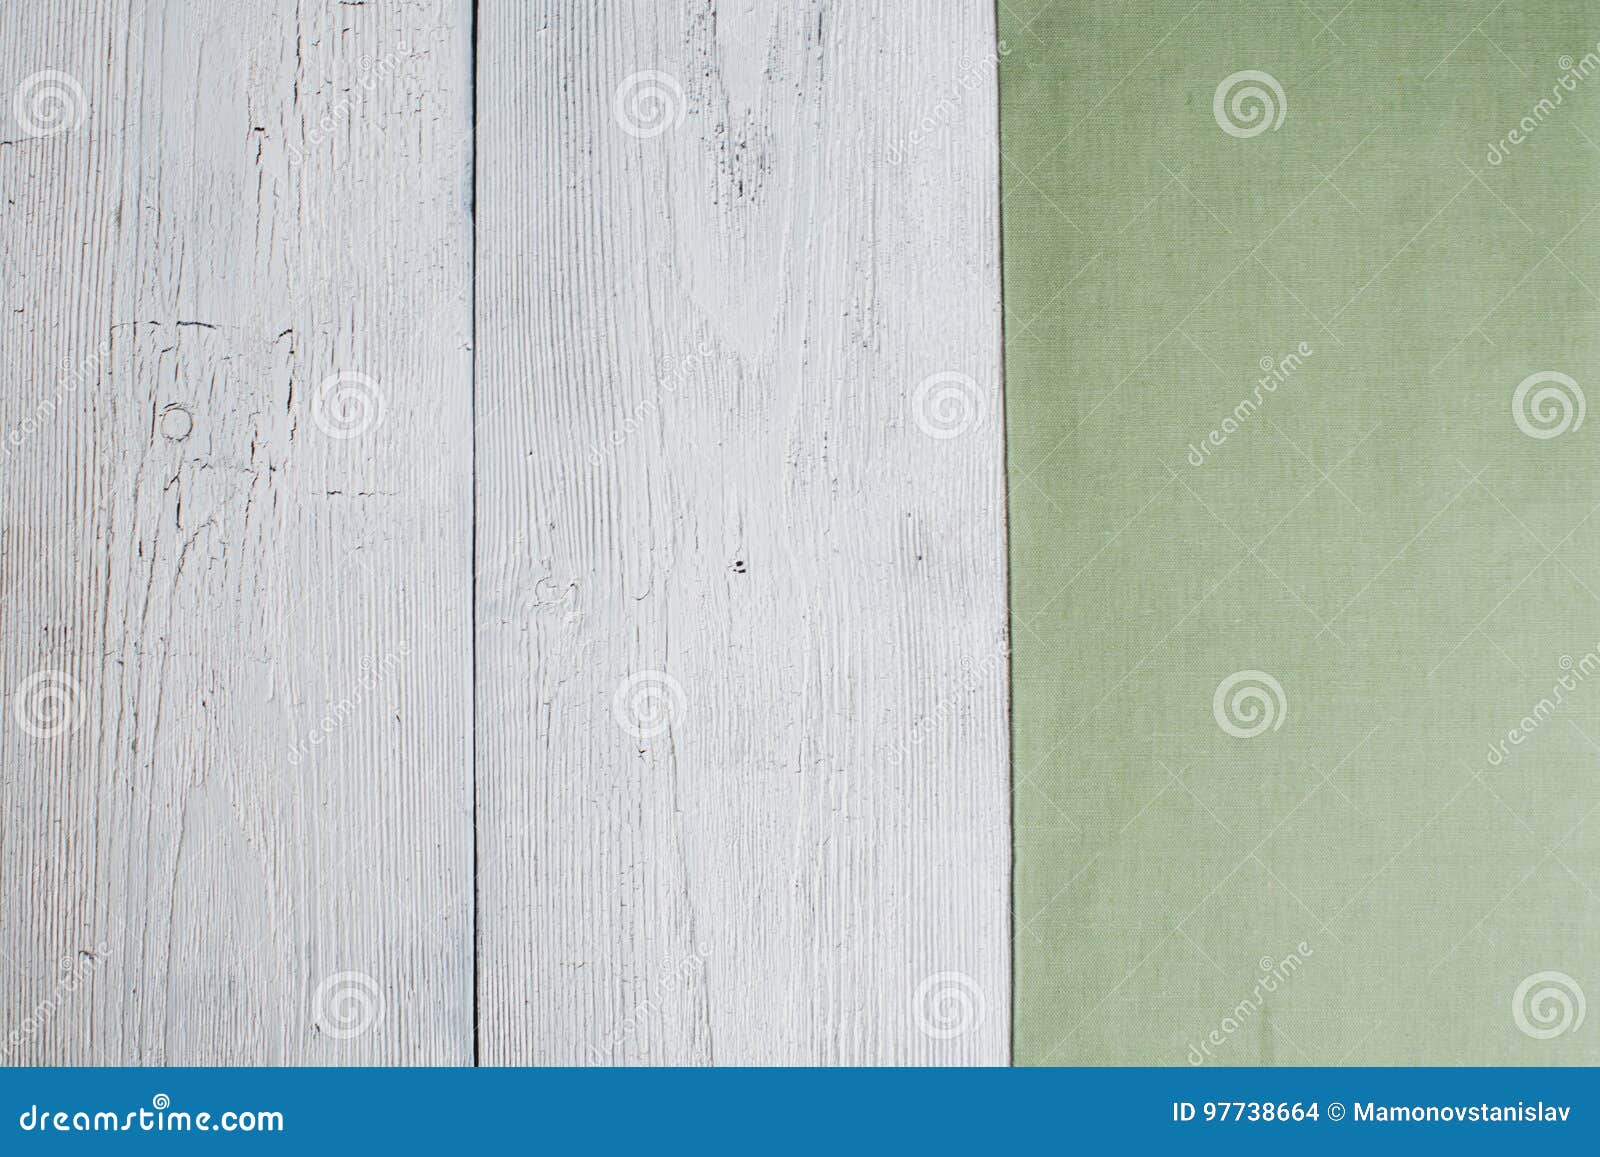 Viejos tableros garrapateados dilapidados, una superficie de madera con p agrietado. Viejos tableros garrapateados dilapidados, una superficie de madera con la pintura agrietada y cubierta con un mantel de lino